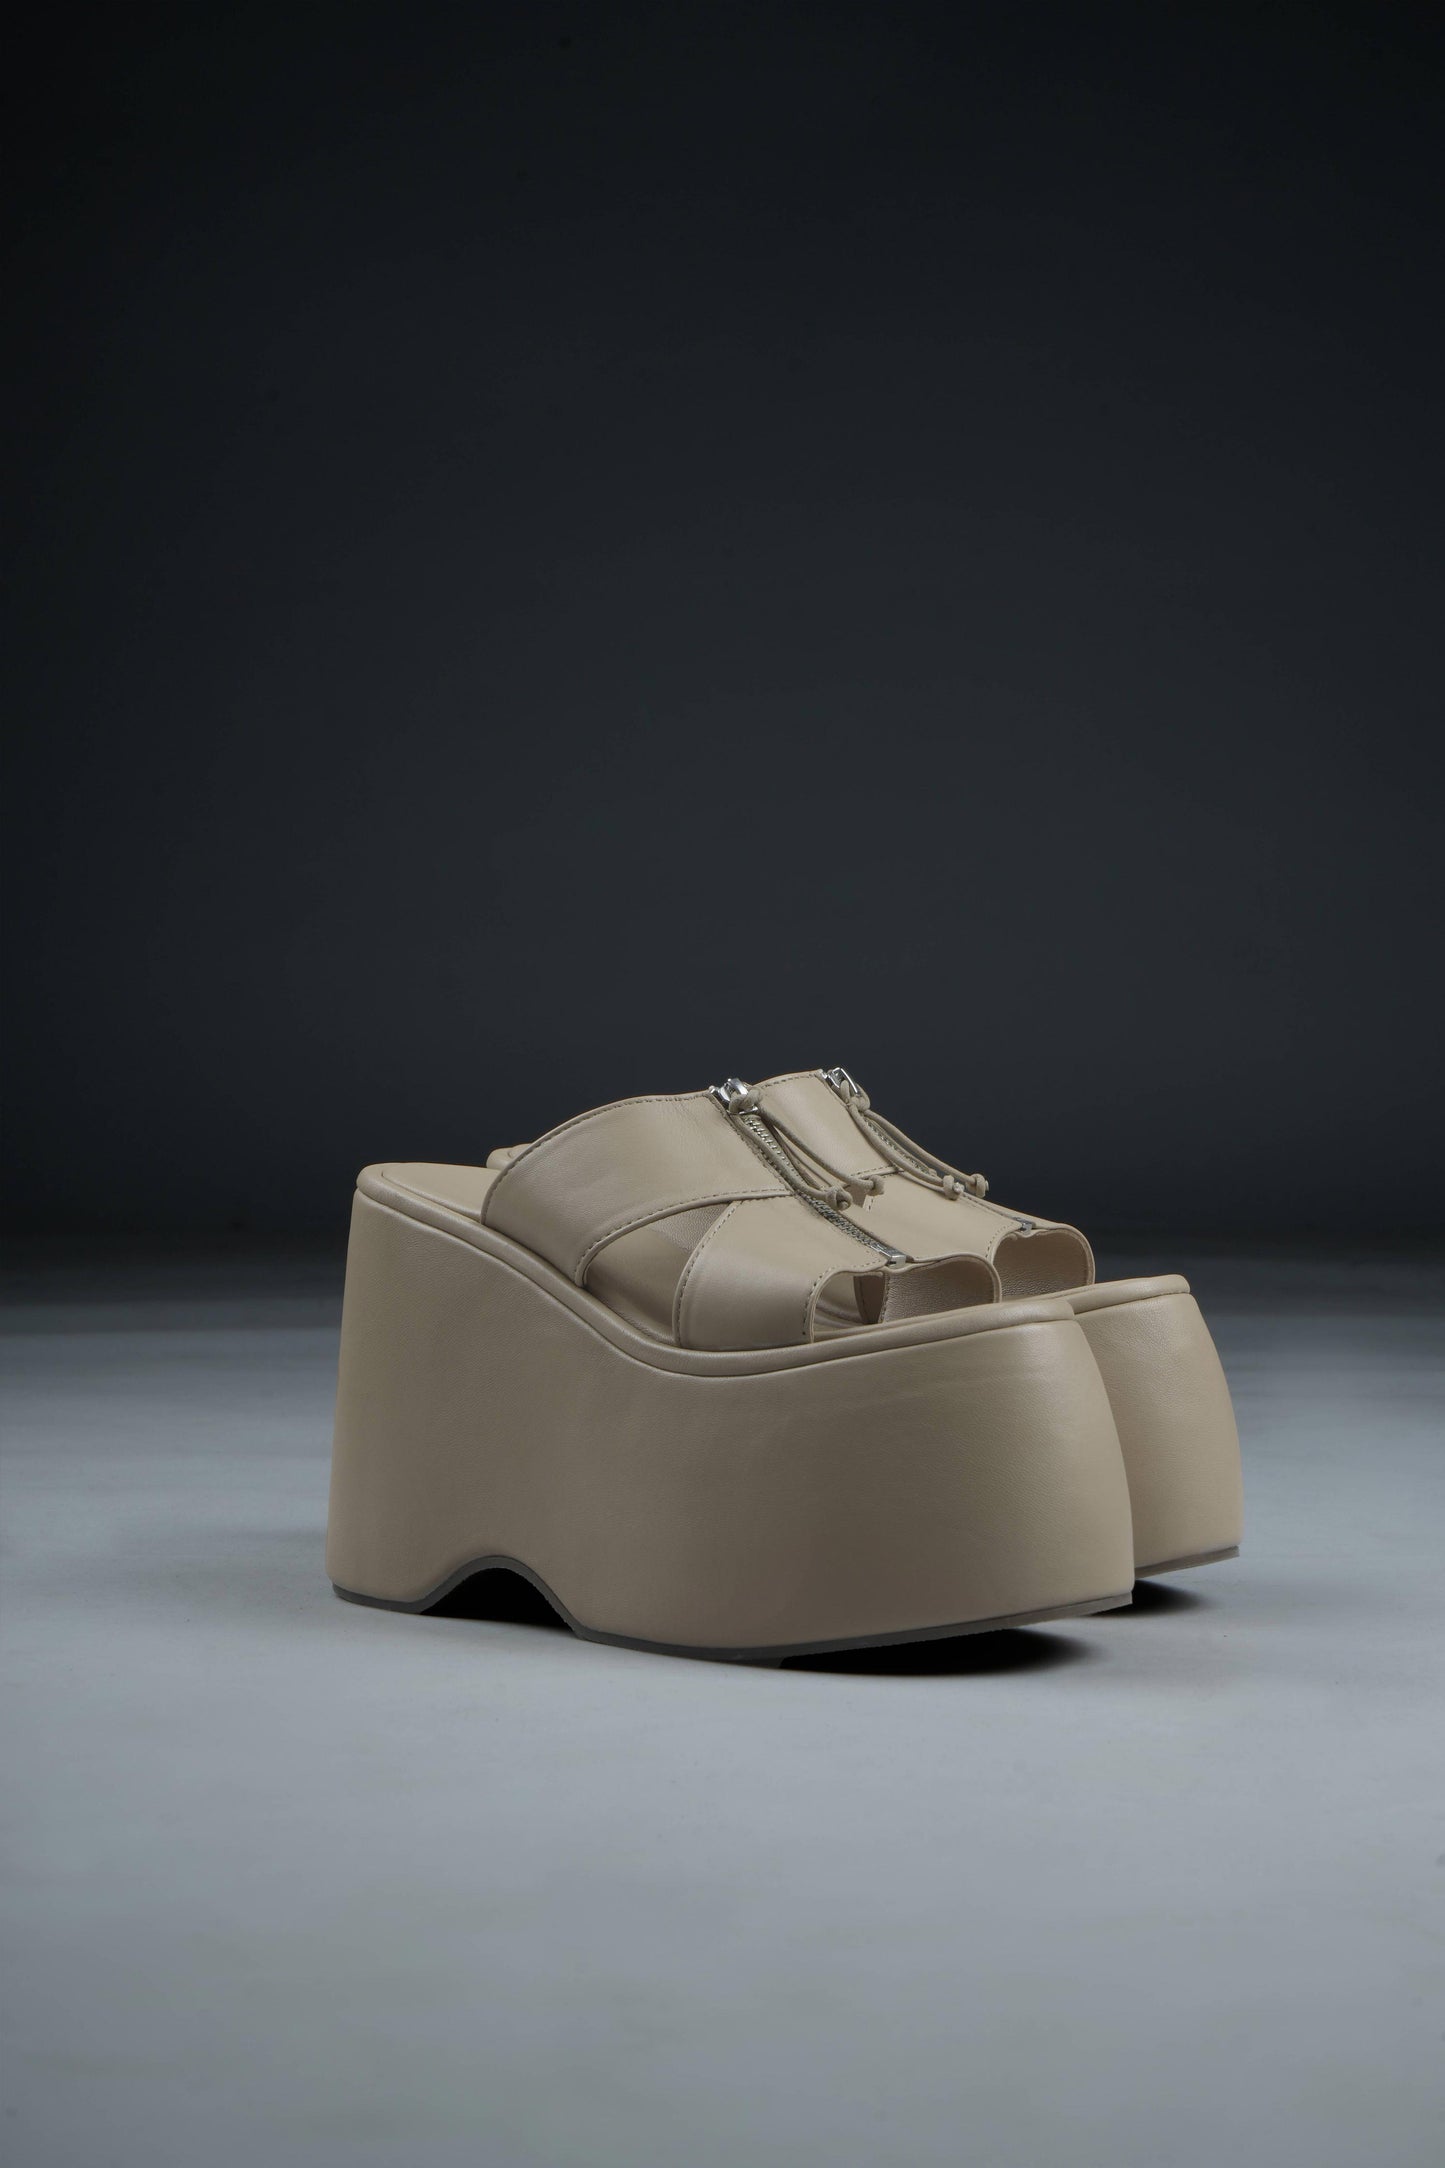 Fonda High heels women shoes